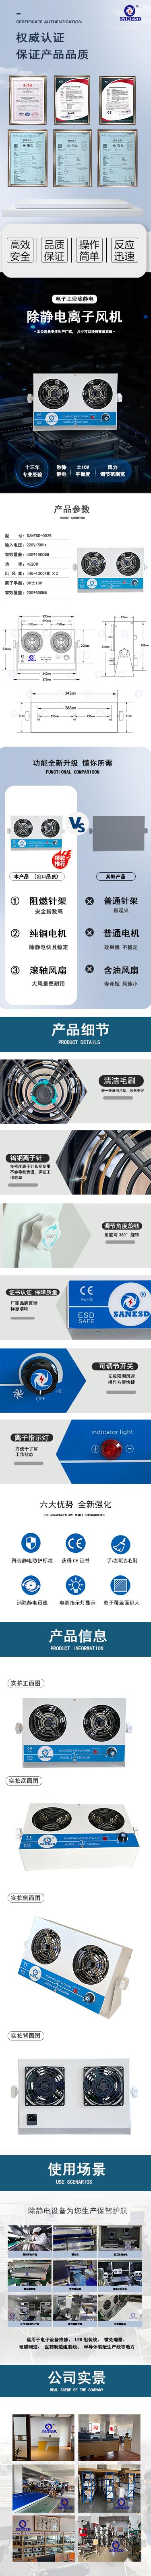 深圳闪电SANESD台式双头离子风机SANESD-002B